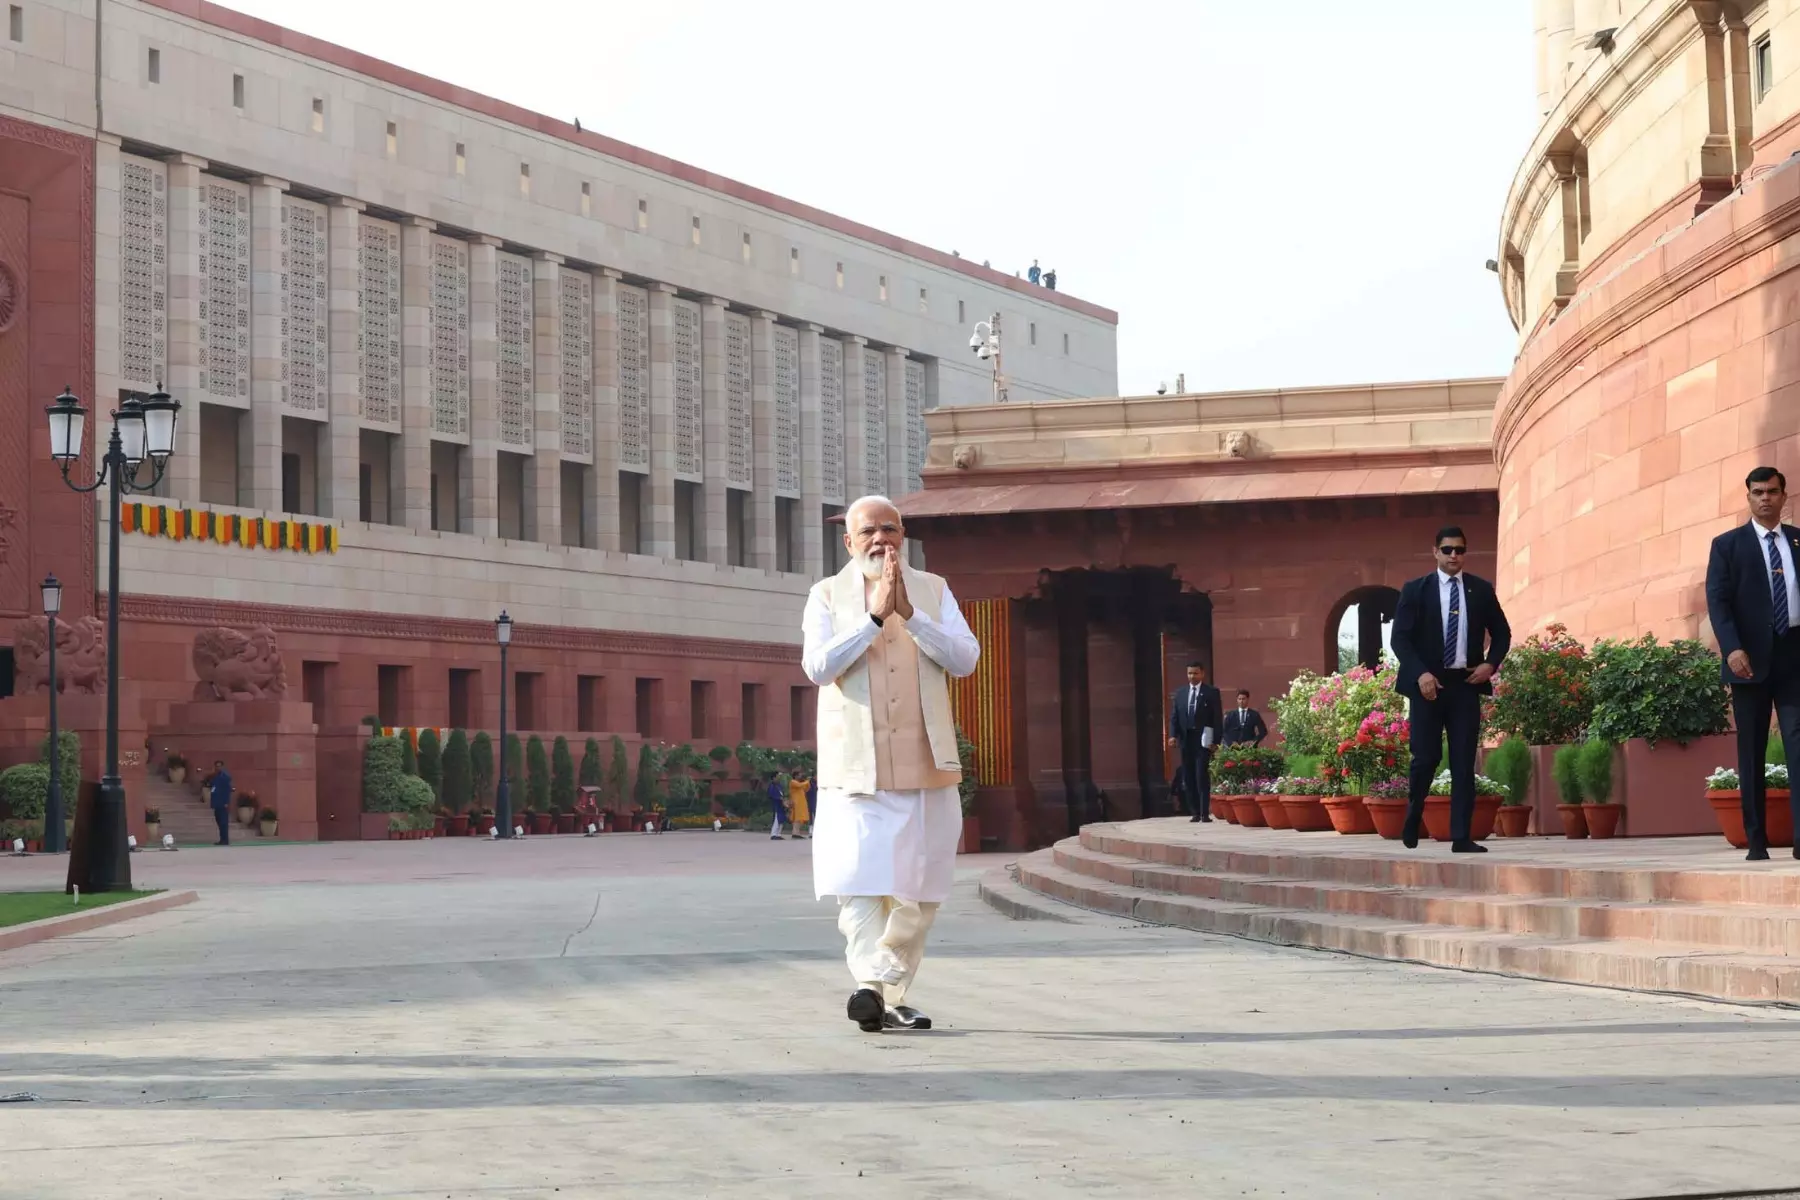 प्रधानमंत्री नरेन्द्र मोदी ने नए संसद भवन के उद्घाटन के अवसर पर तमिलनाडु के अधीनम संतों ने प्रधानमंत्री को सौंपा सेंगोल कर पूरे विधि-विधान के साथ अनुष्ठान किया